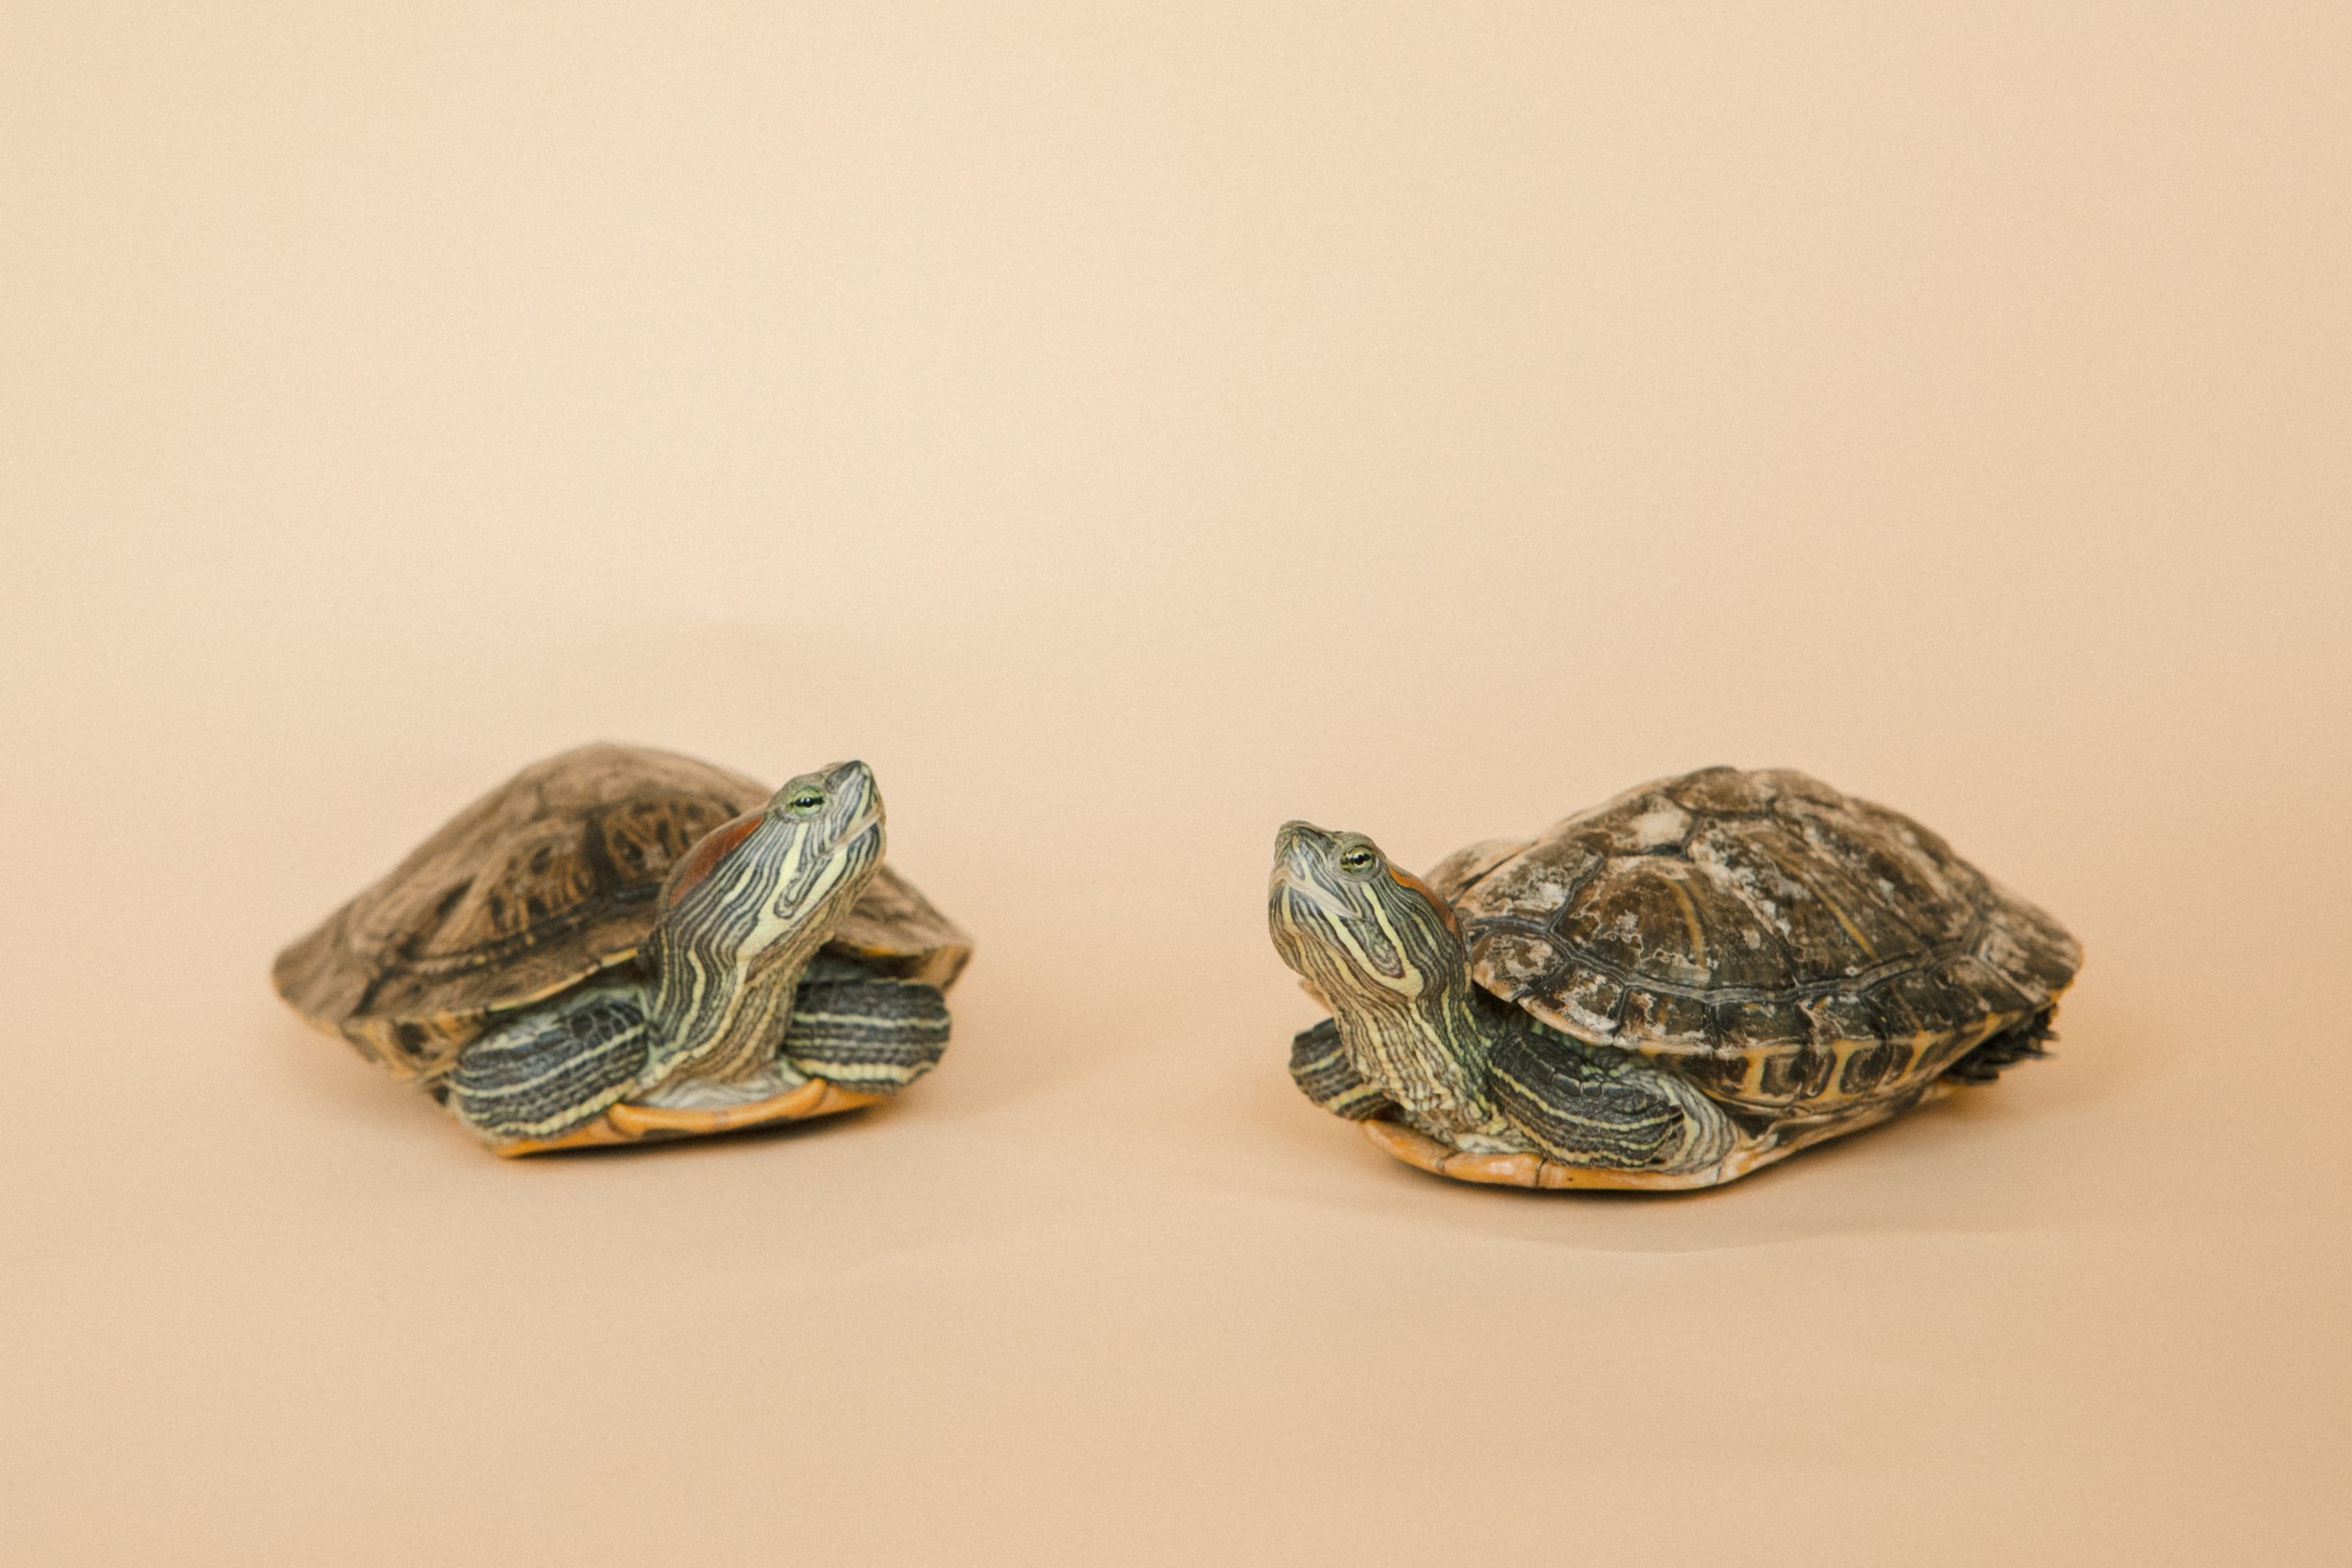 Diferencias entre tortugas de agua y tierra